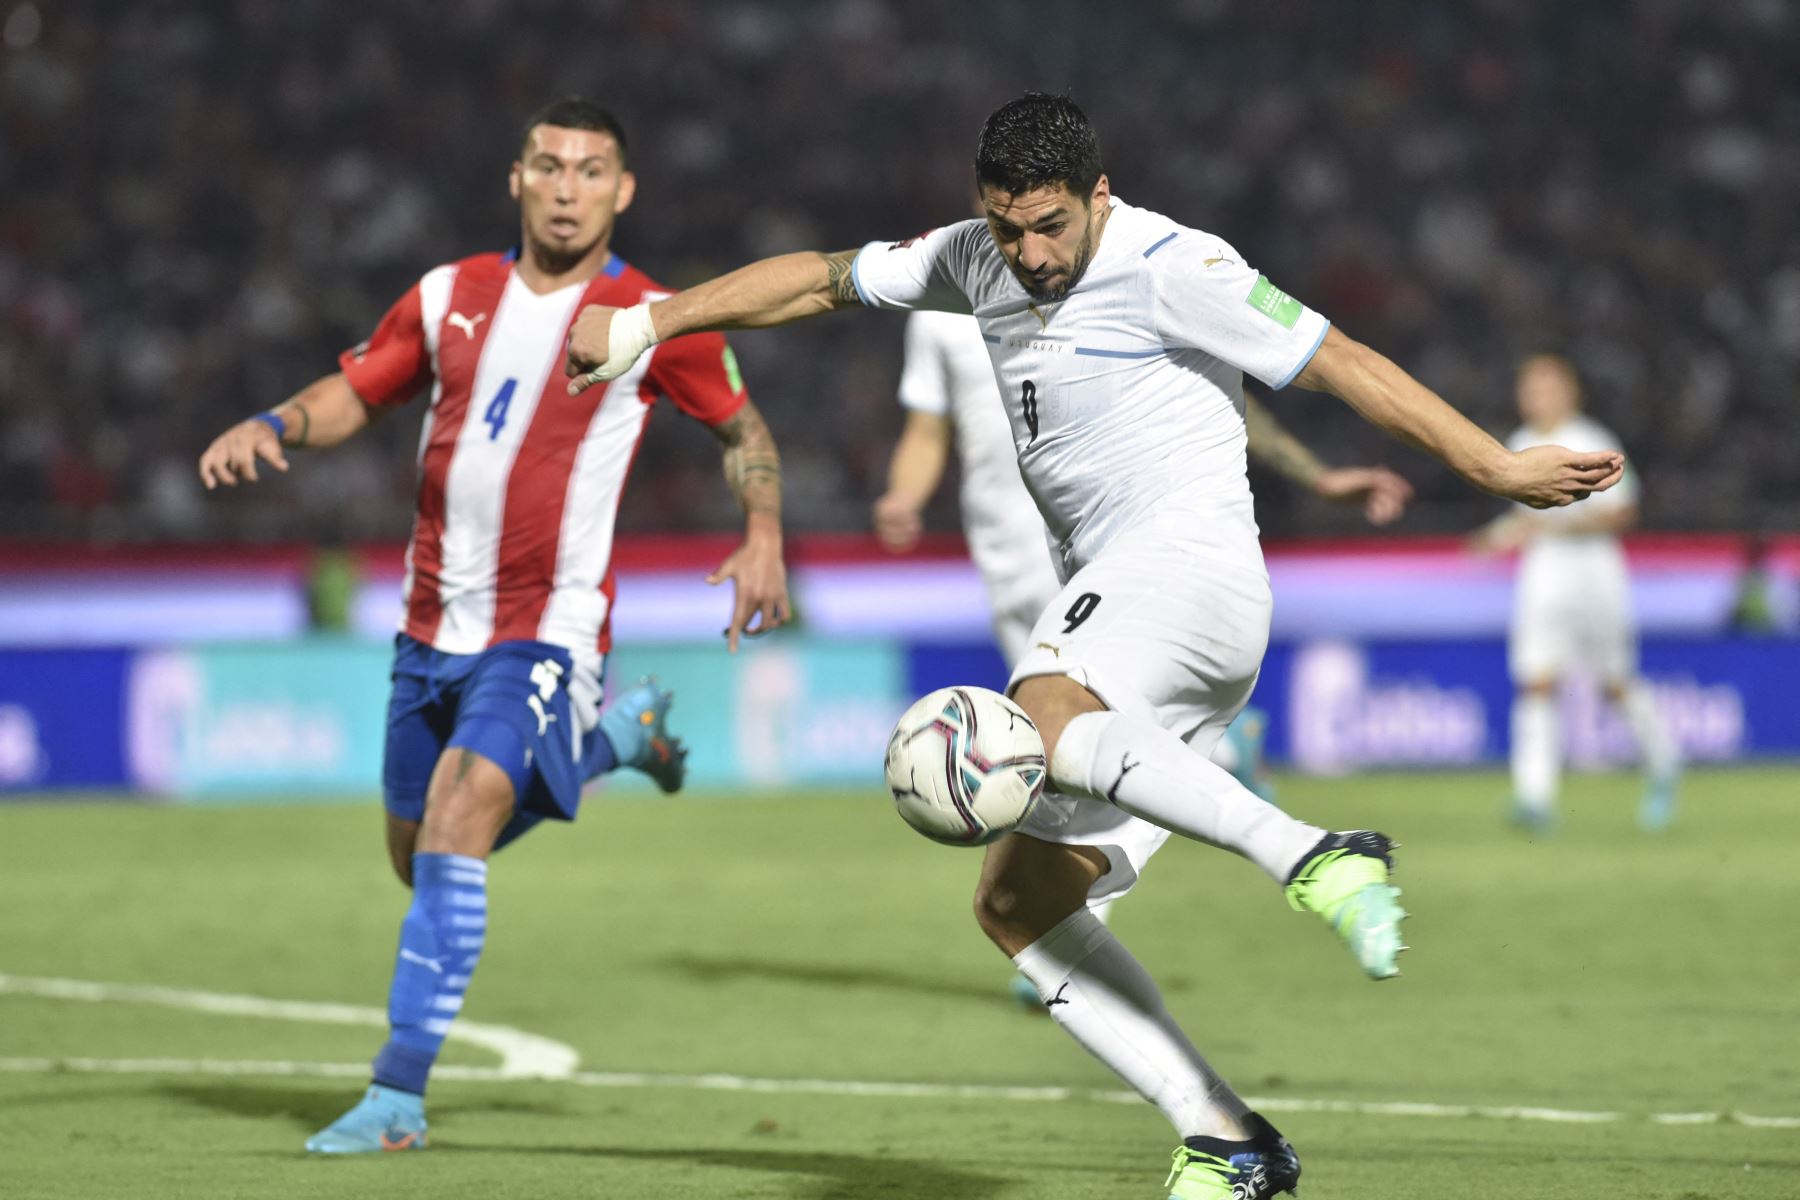 Luis Suárez de Uruguay dispara para anotar un gol contra Paraguay durante su partido de fútbol de clasificación sudamericana para la Copa Mundial de la FIFA Qatar 2022 en el Estadio General Pablo Rojas en Asunción, el 27 de enero de 2022. Foto: AFP